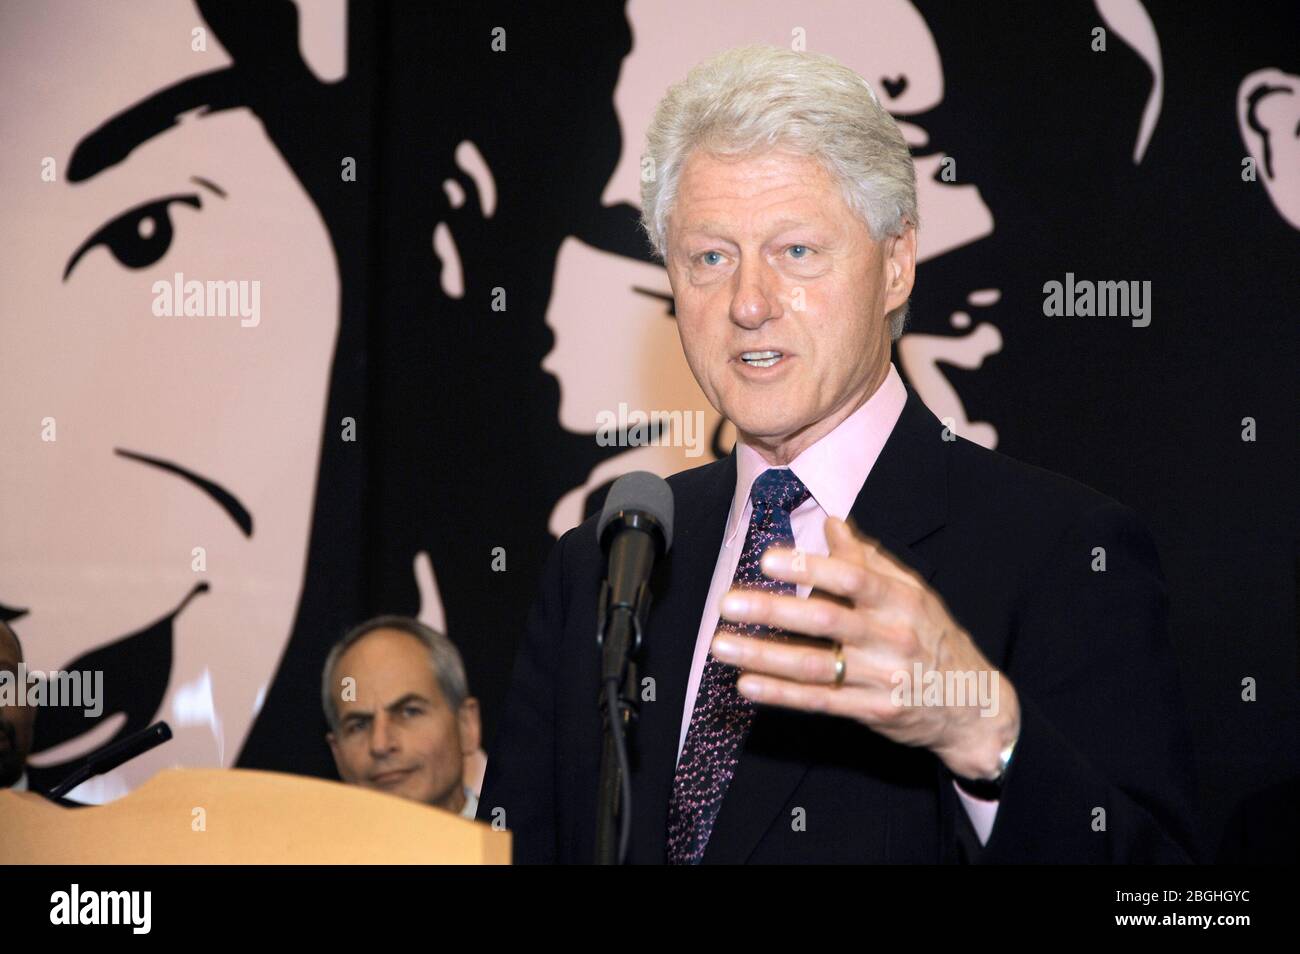 L'ancien président Bill Clinton fait un discours à la Ligue anti-diffamation en l'honneur du maire de Philadelphie, Michael A. Nutter, à Philadelphie, Pennyslvania, le 28 avril 2009. Crédit: Scott Weiner/MediaPunch Banque D'Images